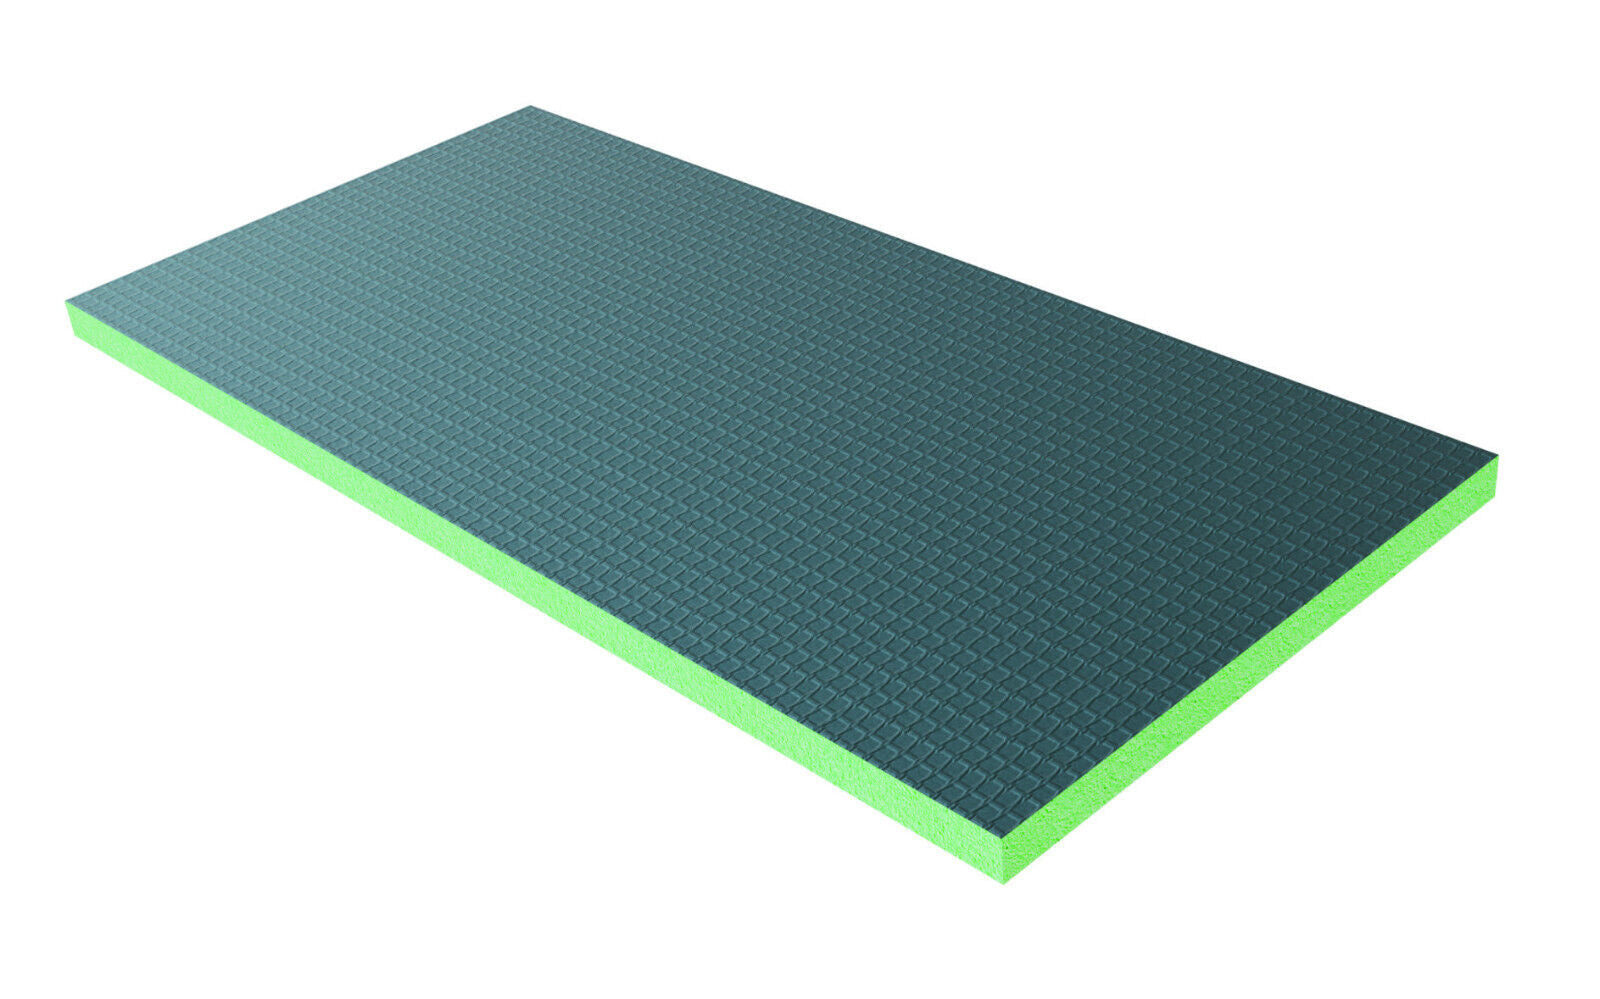 Shower Enclosure Tile Backer Boards 1200x600/2500x600/6/25/40mm